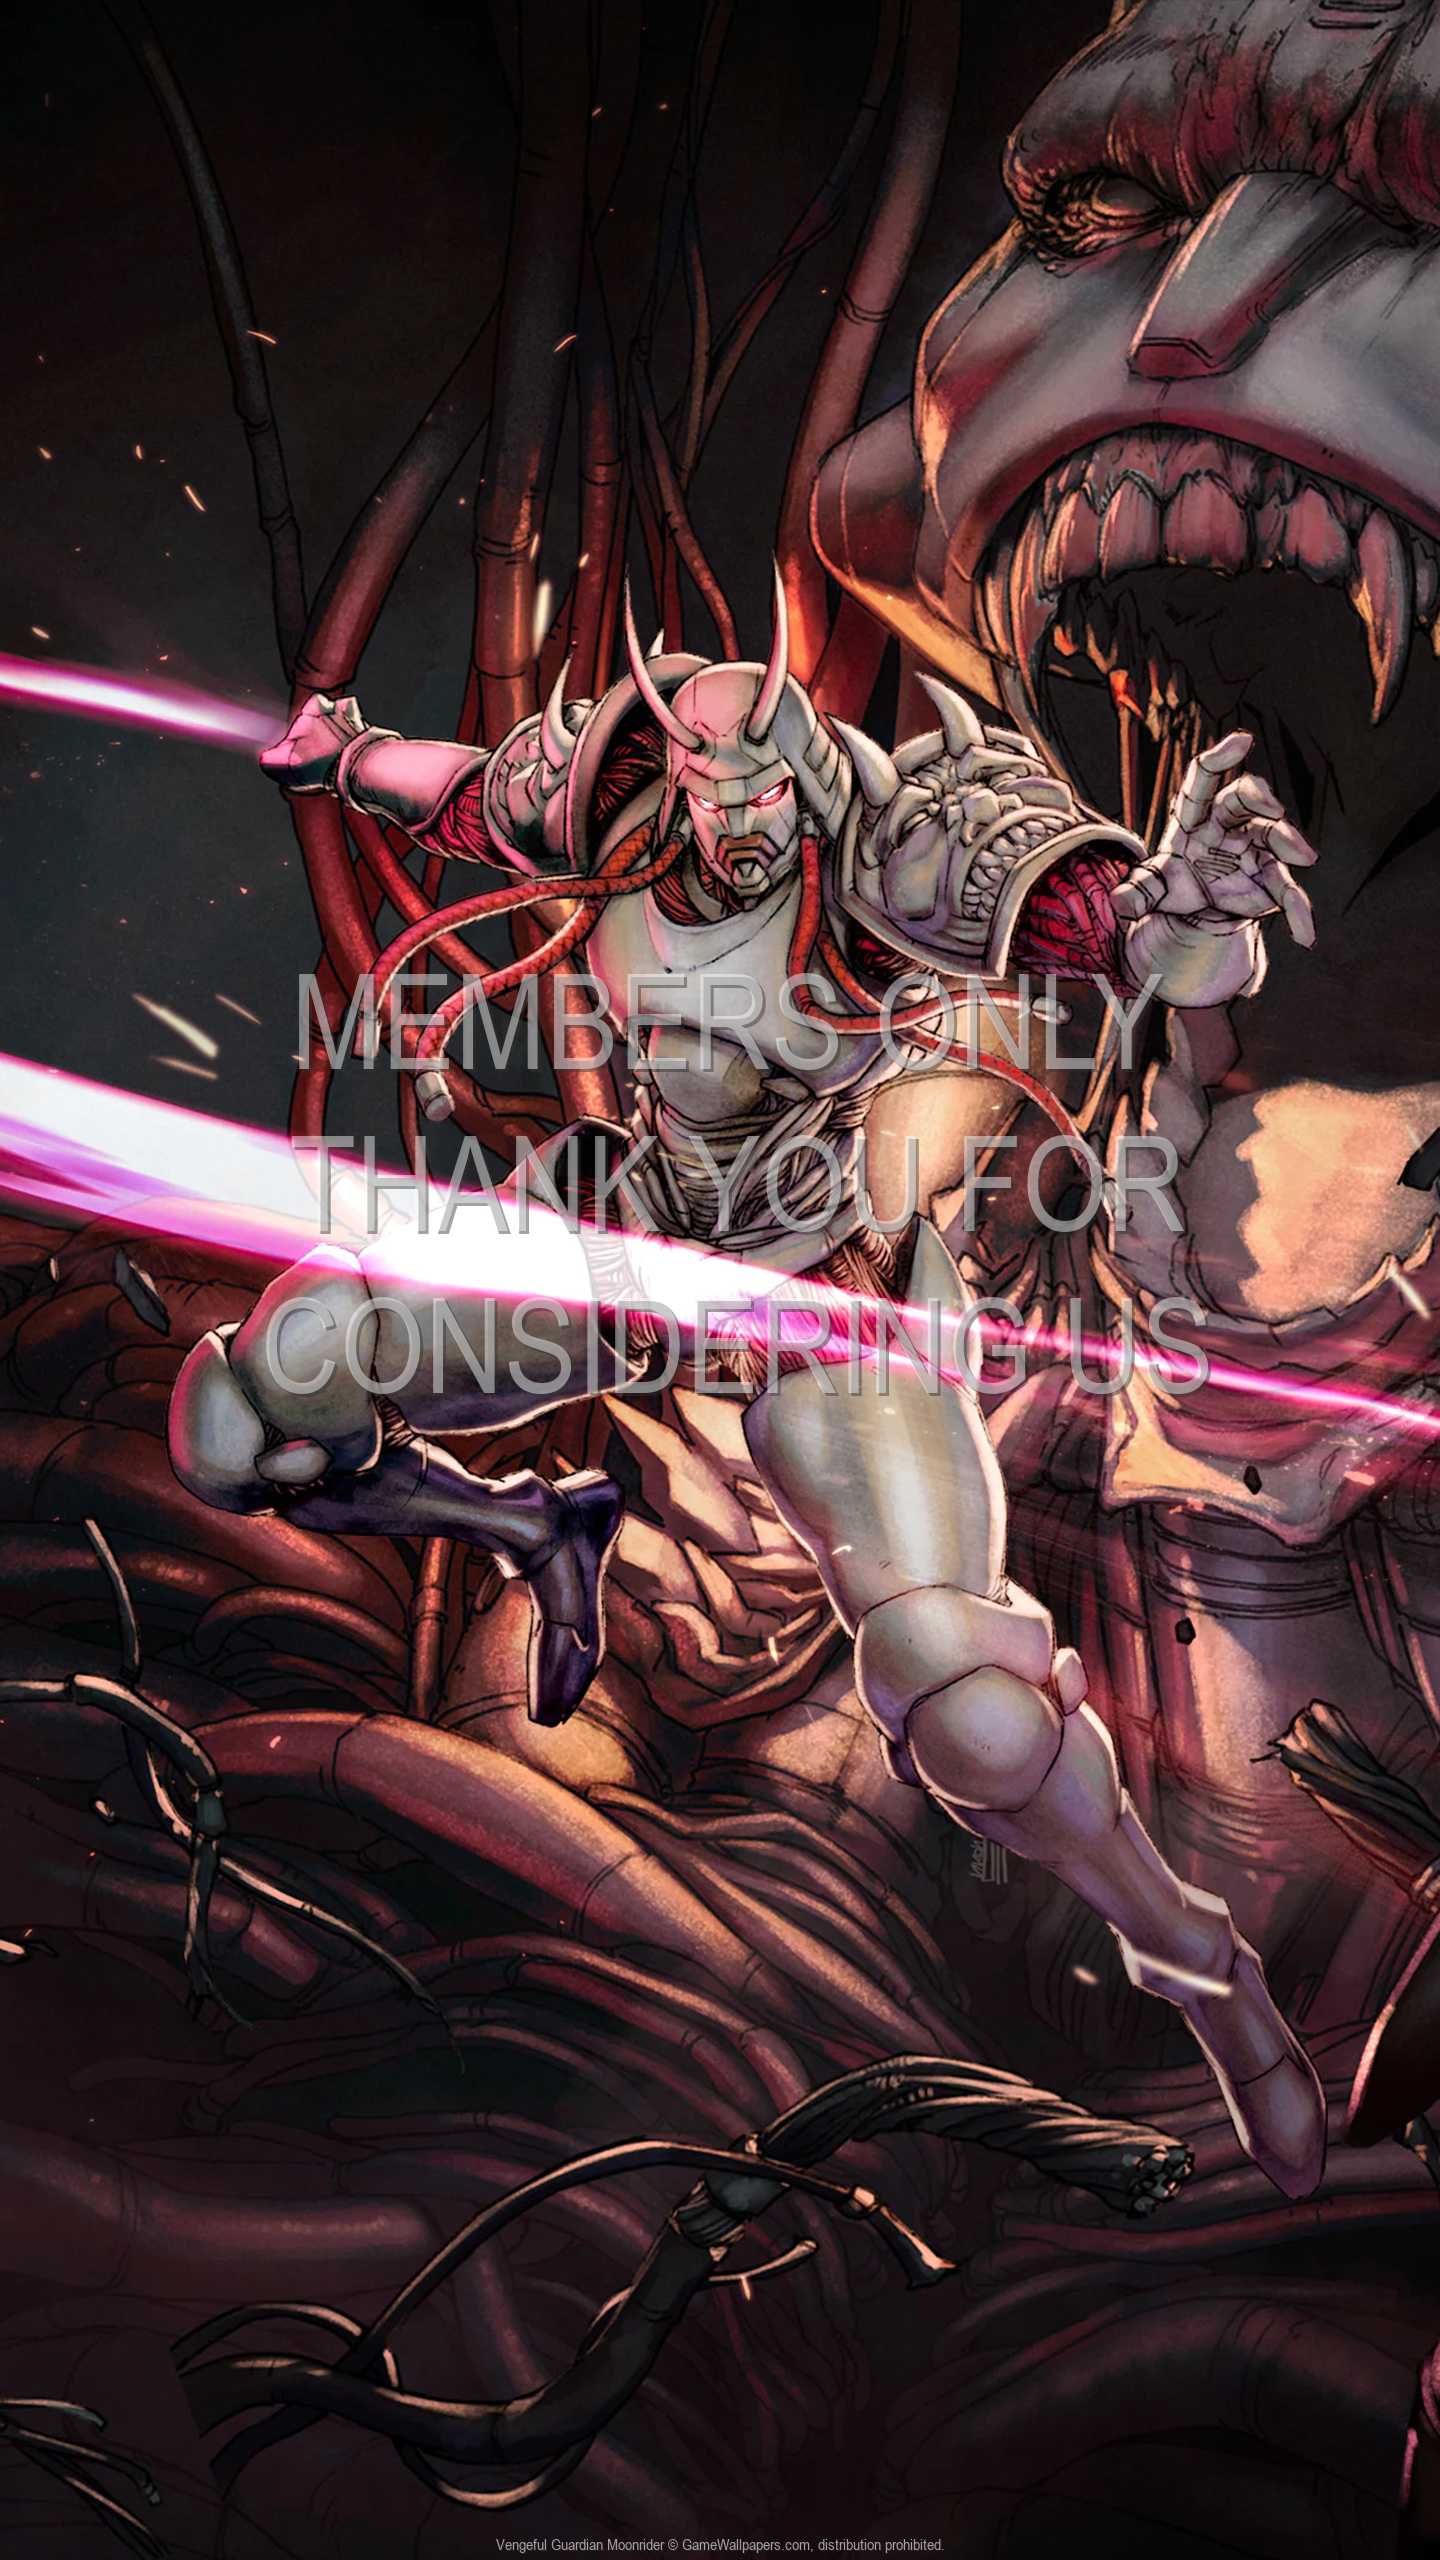 Vengeful Guardian: Moonrider 1440p Vertical Mobile wallpaper or background 01